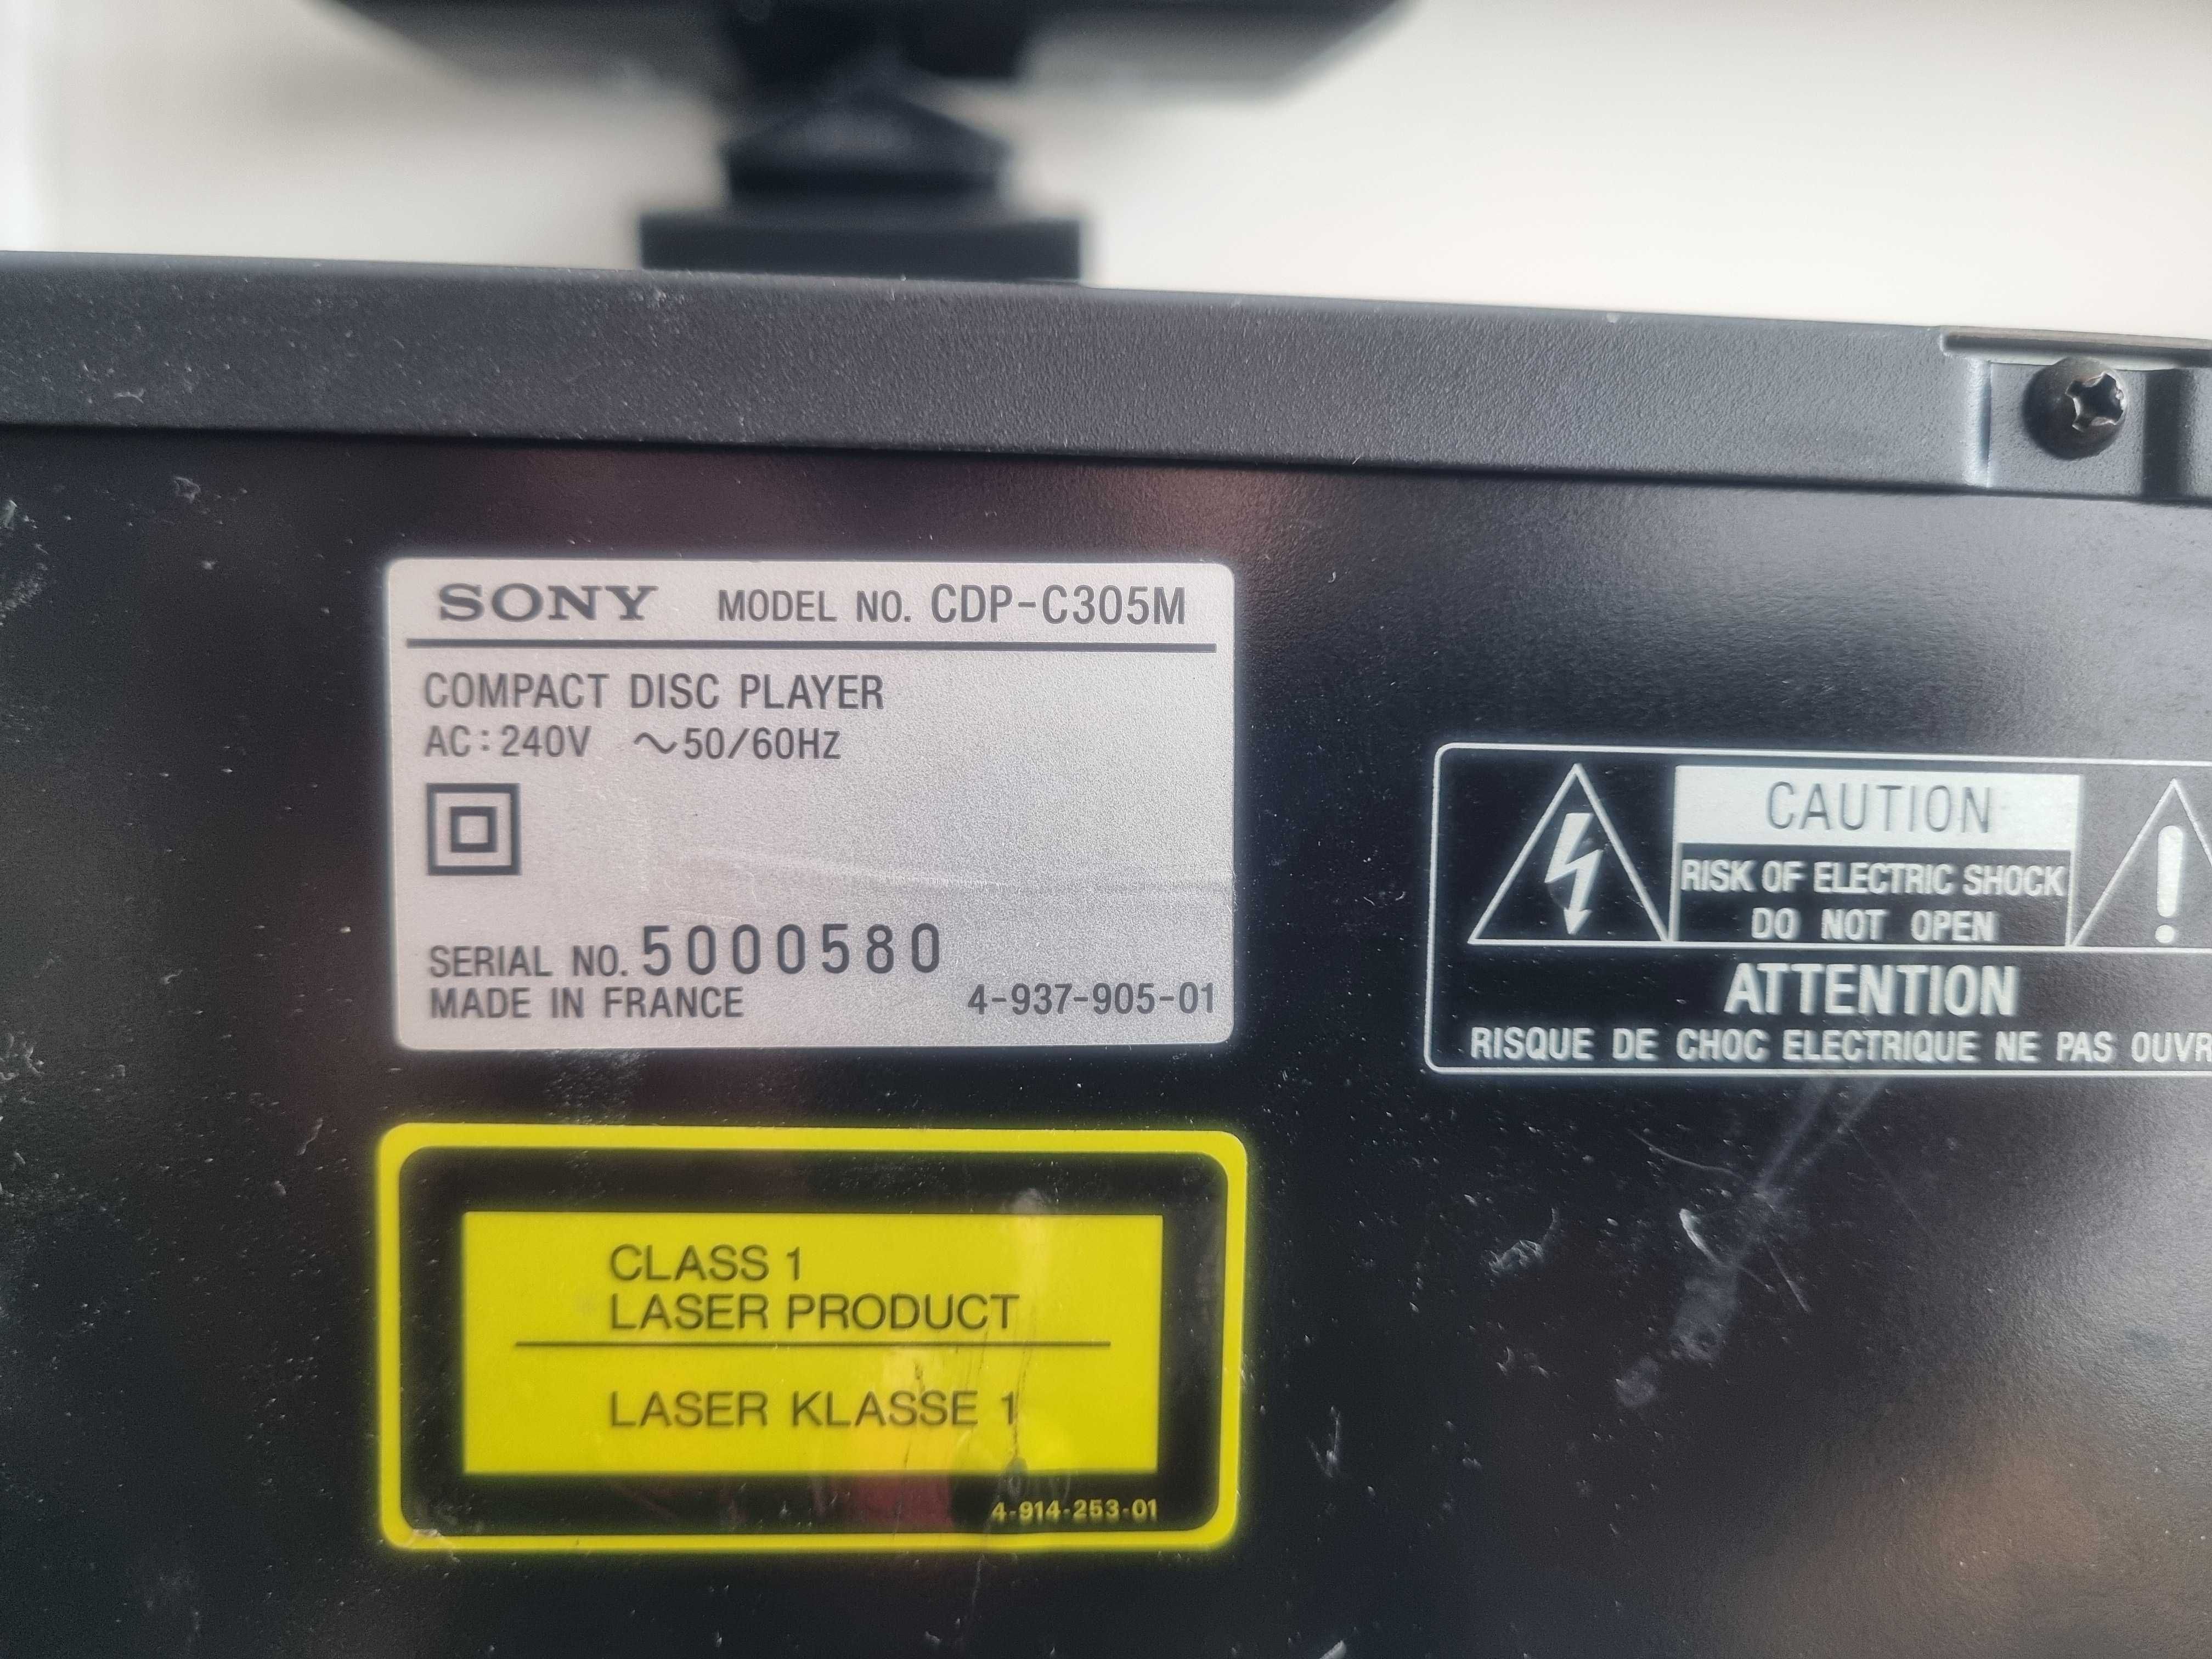 OKAZJA Odtwarzacz plyt cd 5 karuzela Sony Cdp c305m made in France